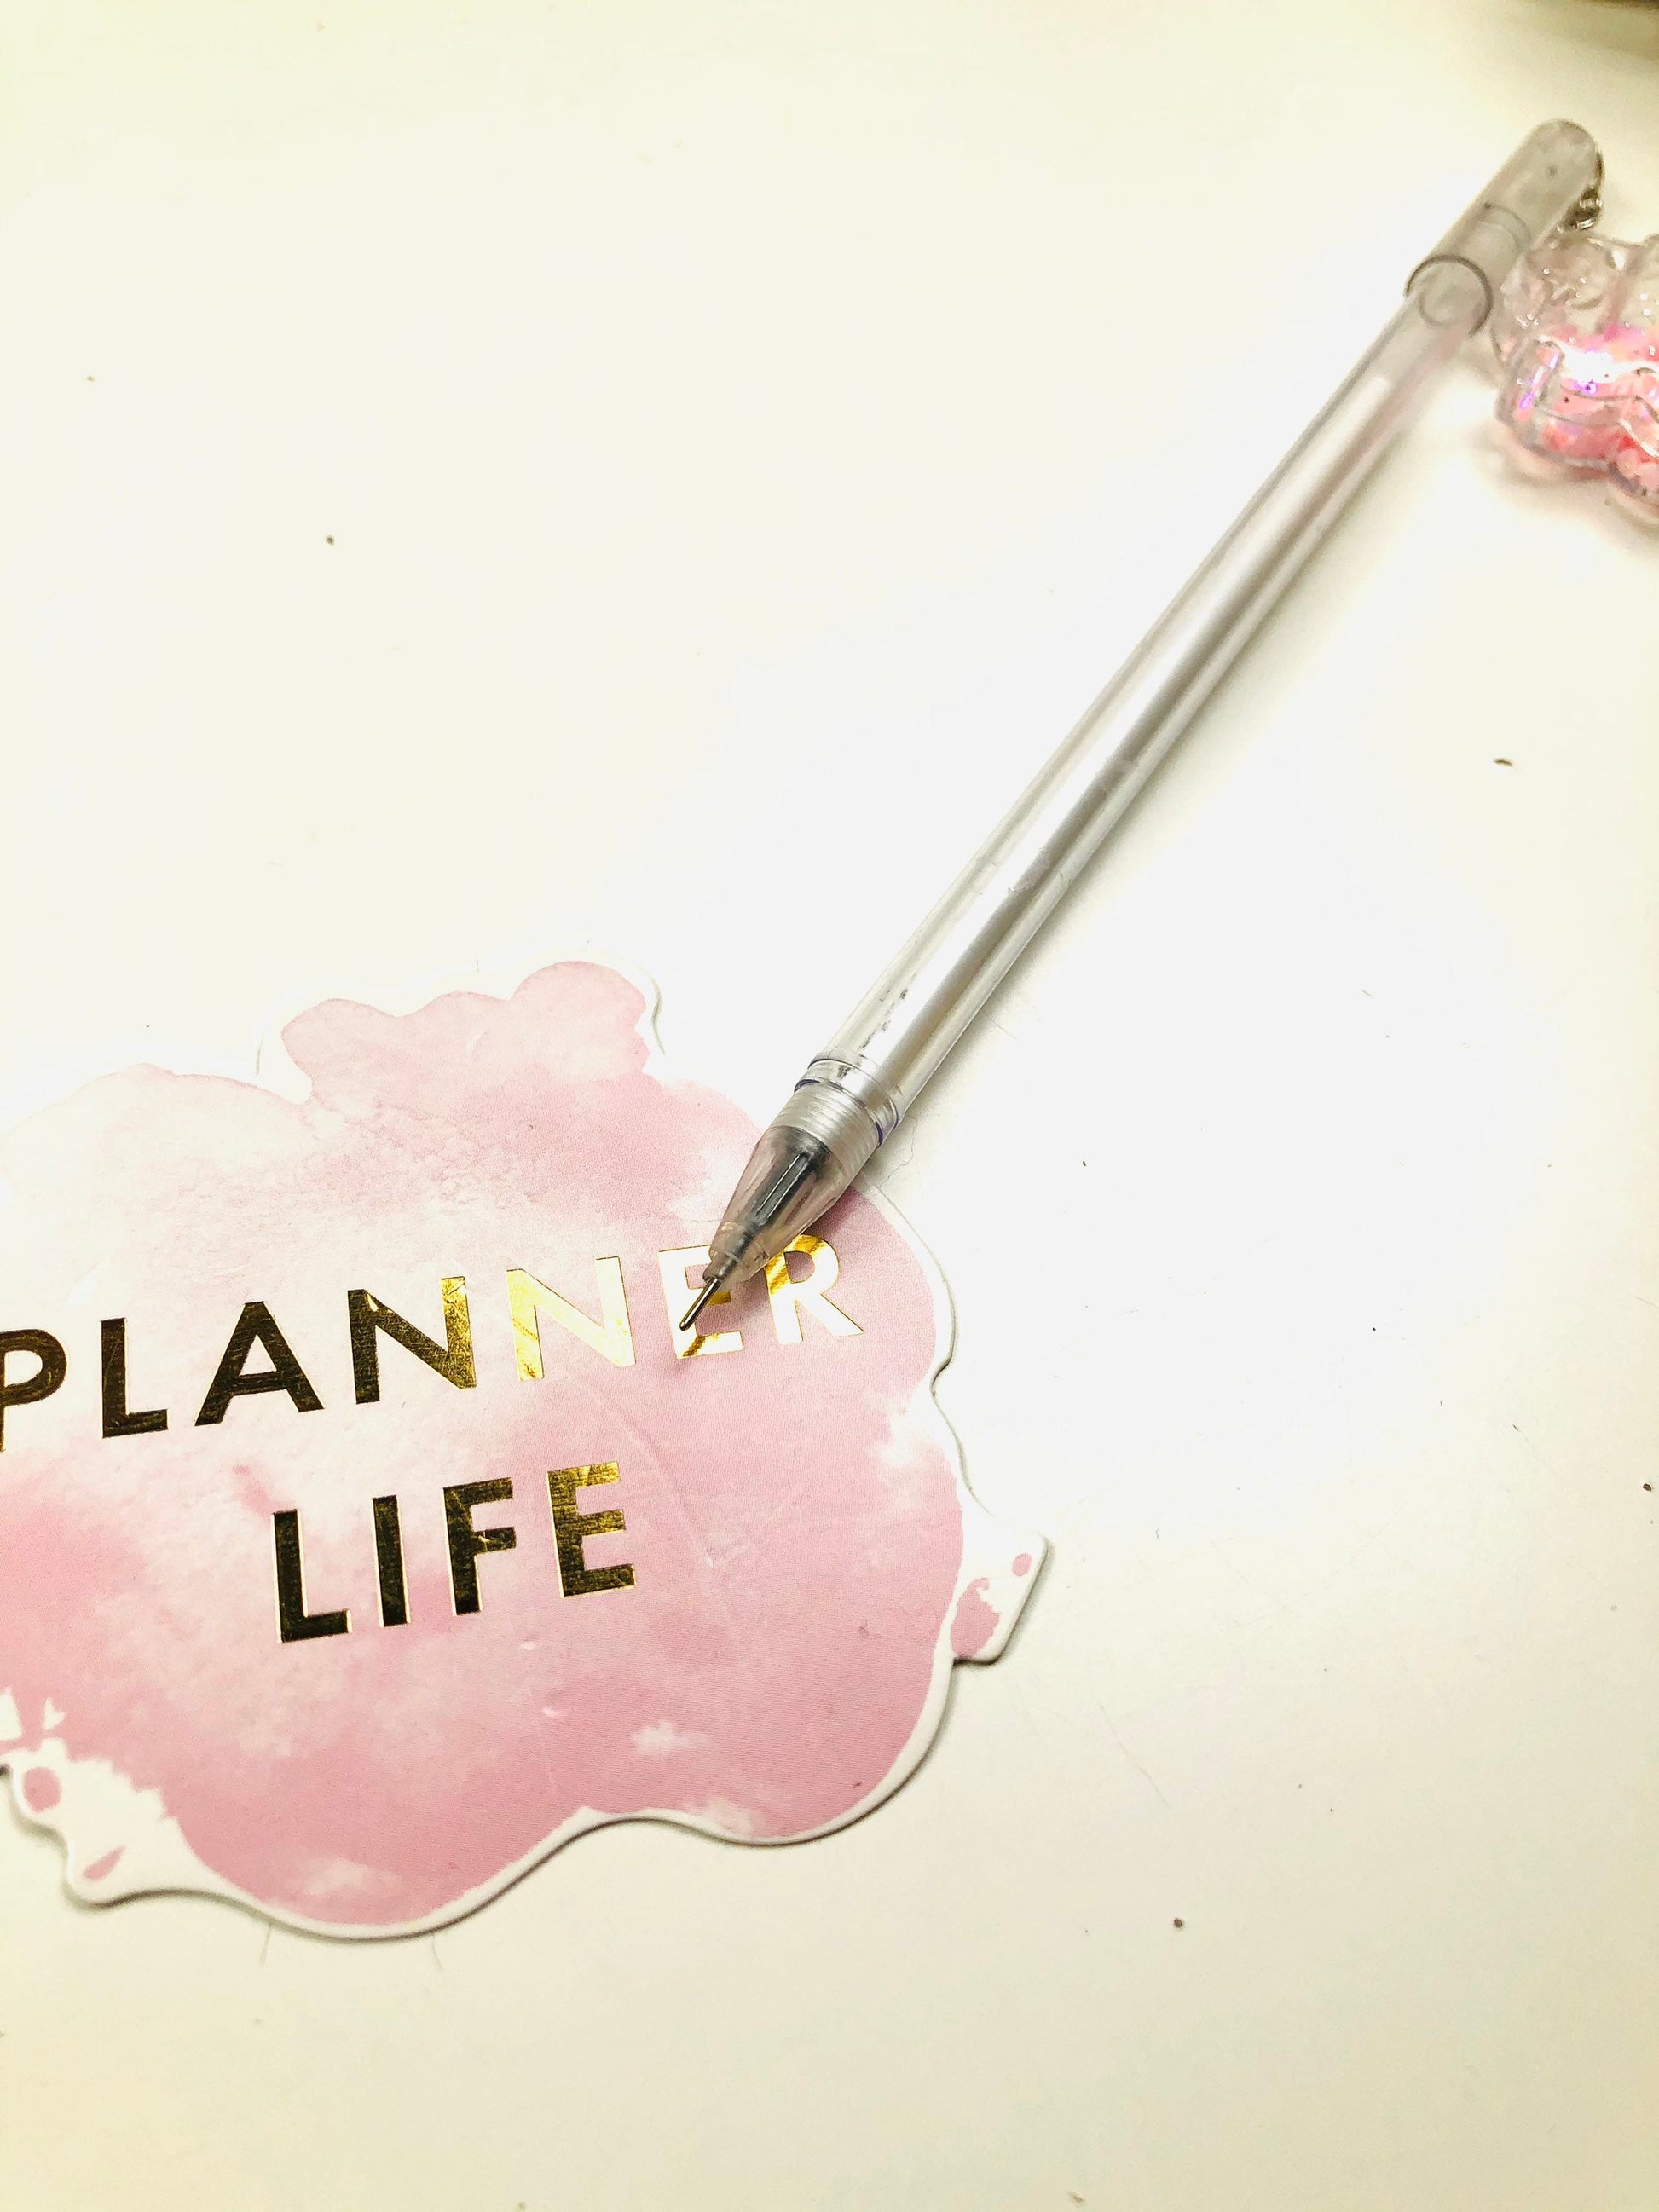 Sakura Friction Pink Girl Gel Pen 5PCS – ubekeen